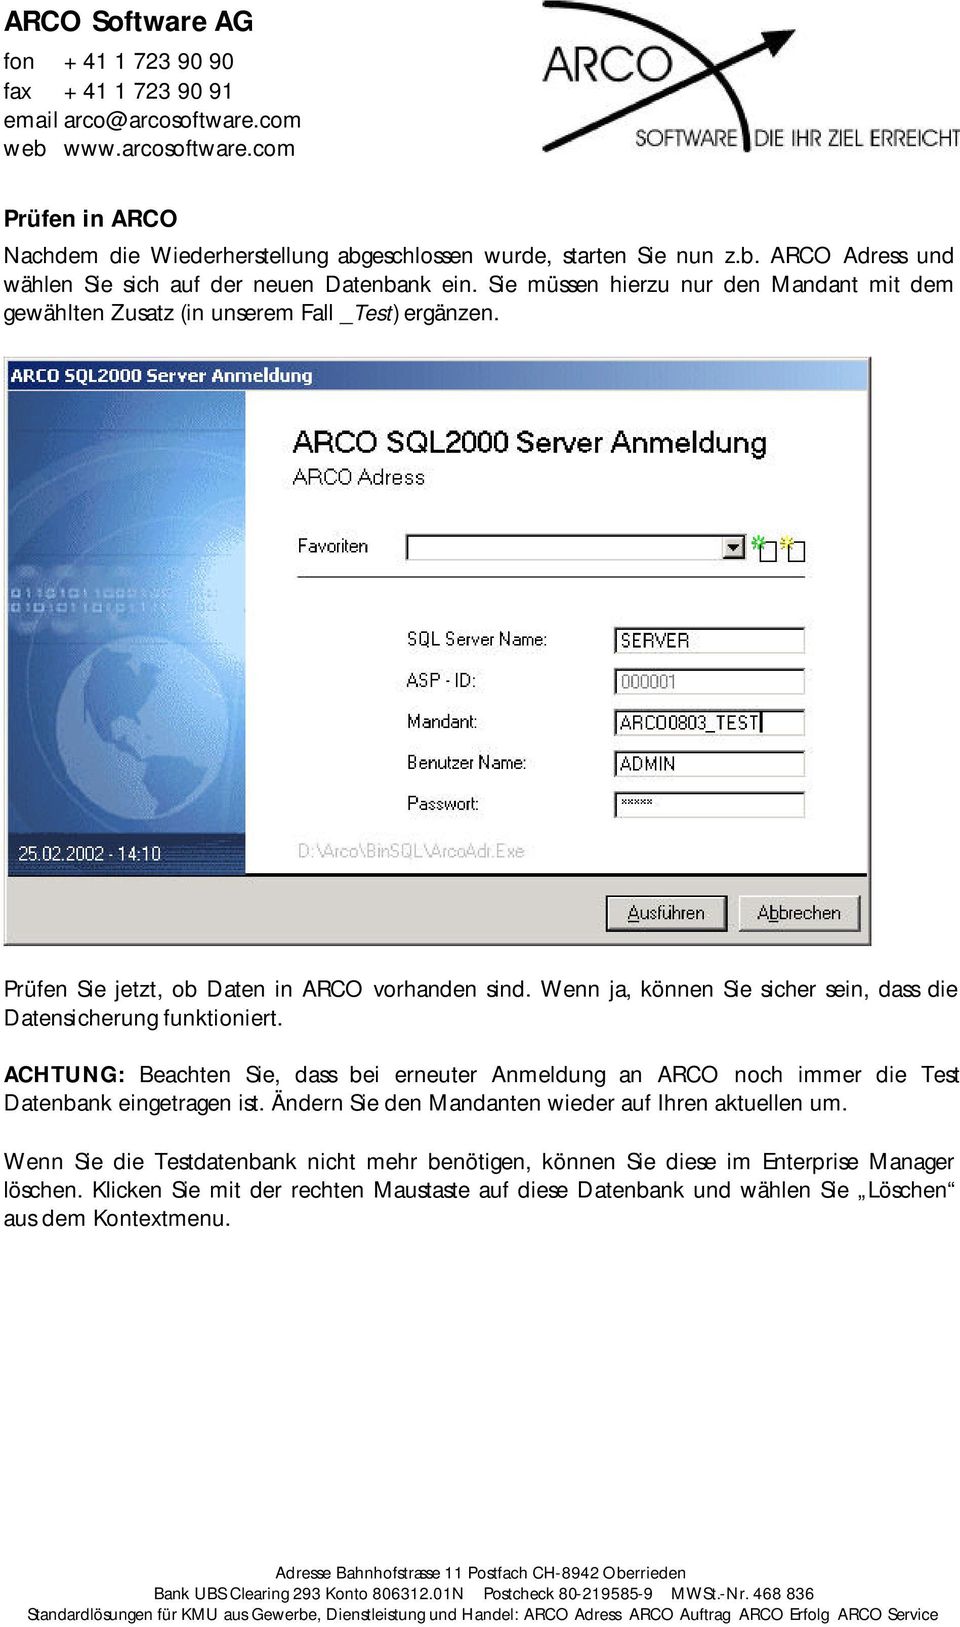 Wenn ja, können Sie sicher sein, dass die Datensicherung funktioniert. ACHTUNG: Beachten Sie, dass bei erneuter Anmeldung an ARCO noch immer die Test Datenbank eingetragen ist.